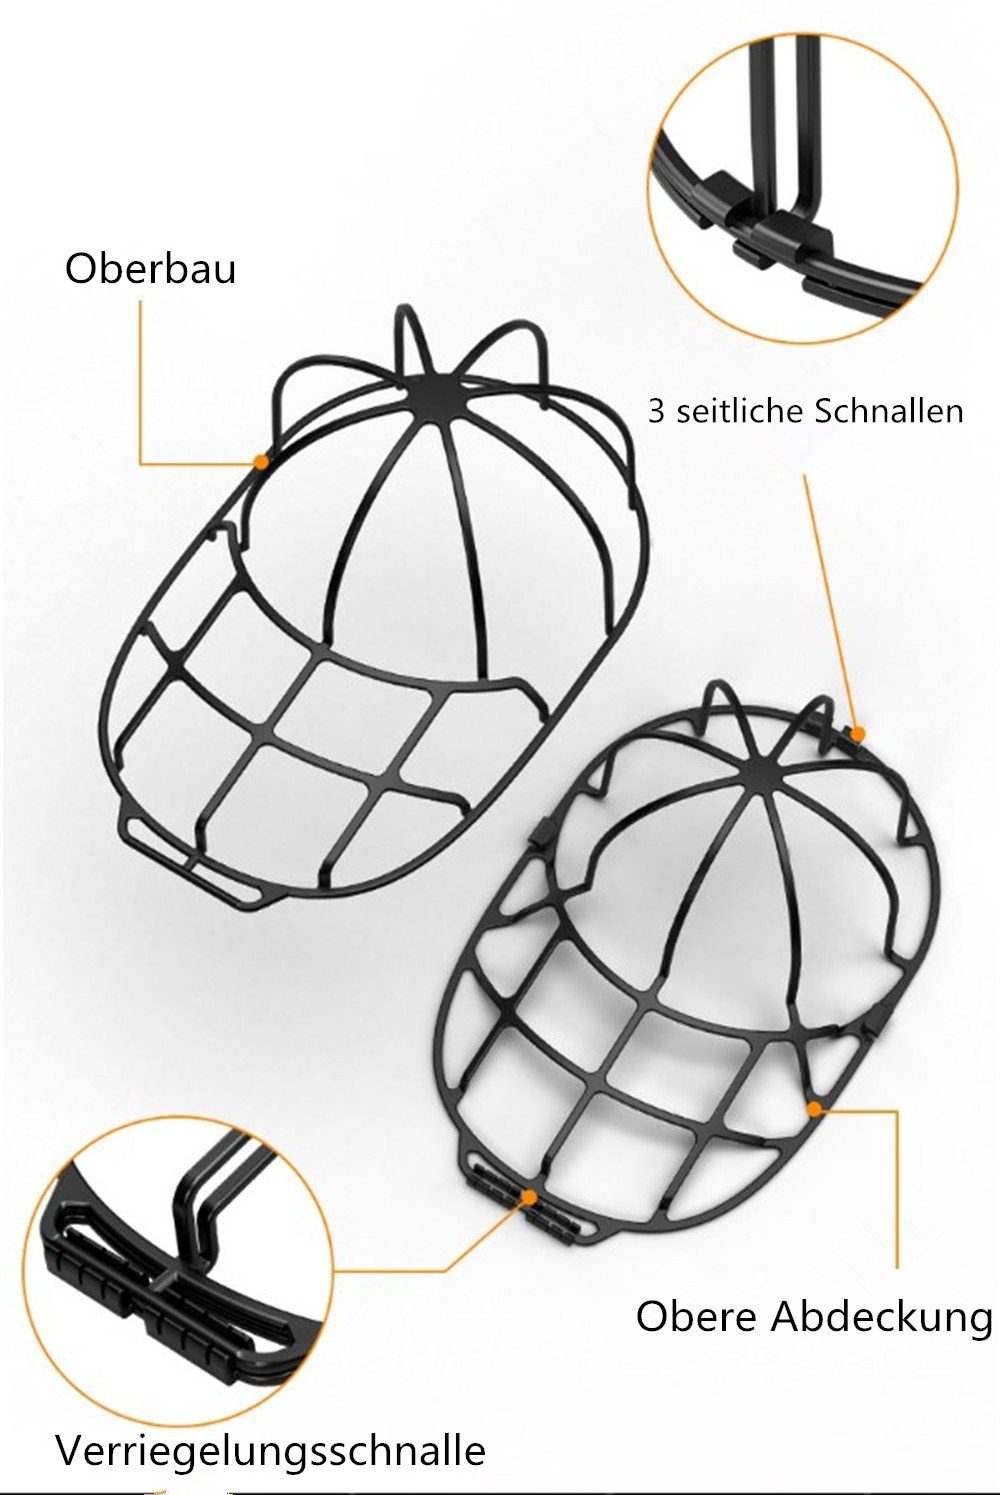 XDeer Ballonmütze 2 Stück Basecap,Hut-Unterlegscheibe Waschmaschinen Cap Waschgestell Kappen Waschmaschine für black Form Washer Geschirrspüler,Baseball oder für